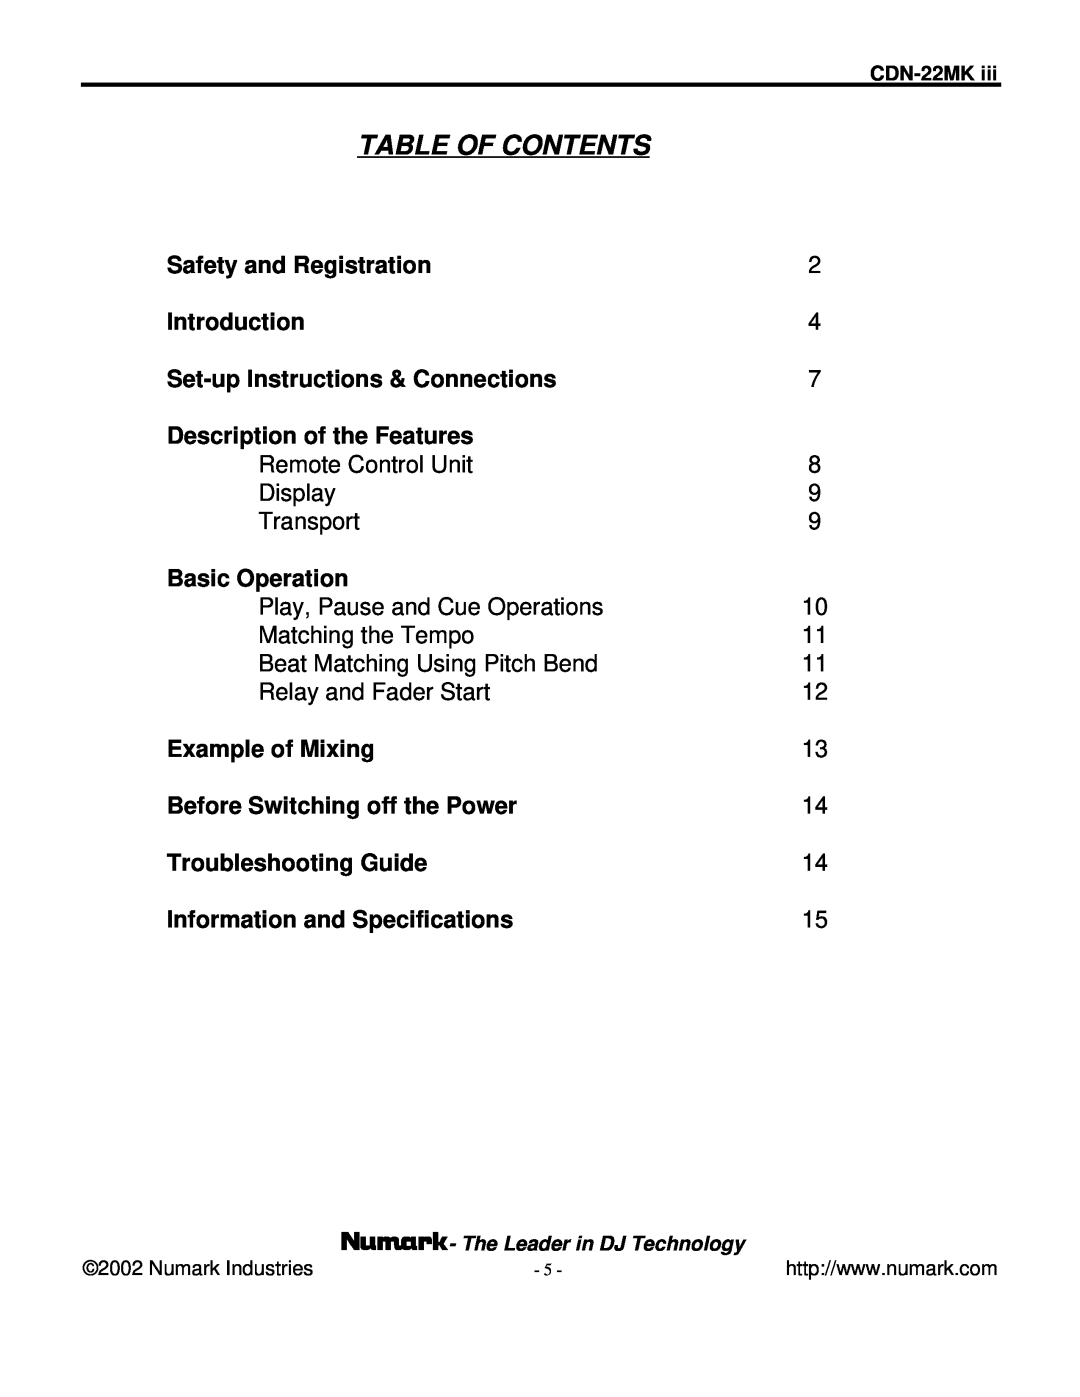 Numark Industries CDN-22MK III manual Table Of Contents 